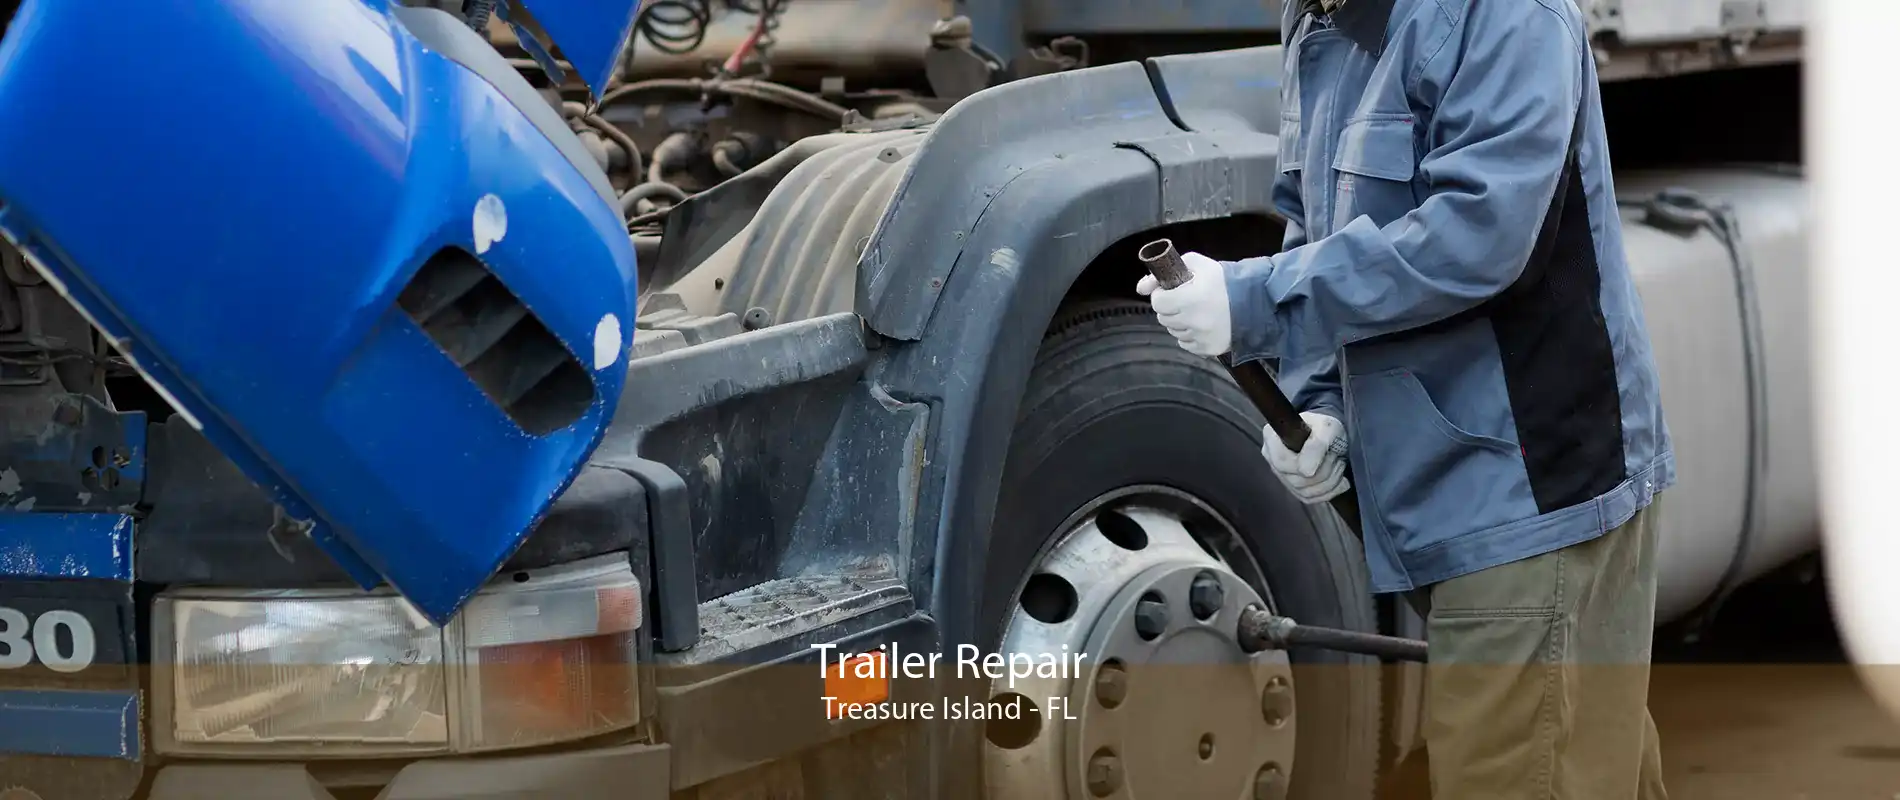 Trailer Repair Treasure Island - FL